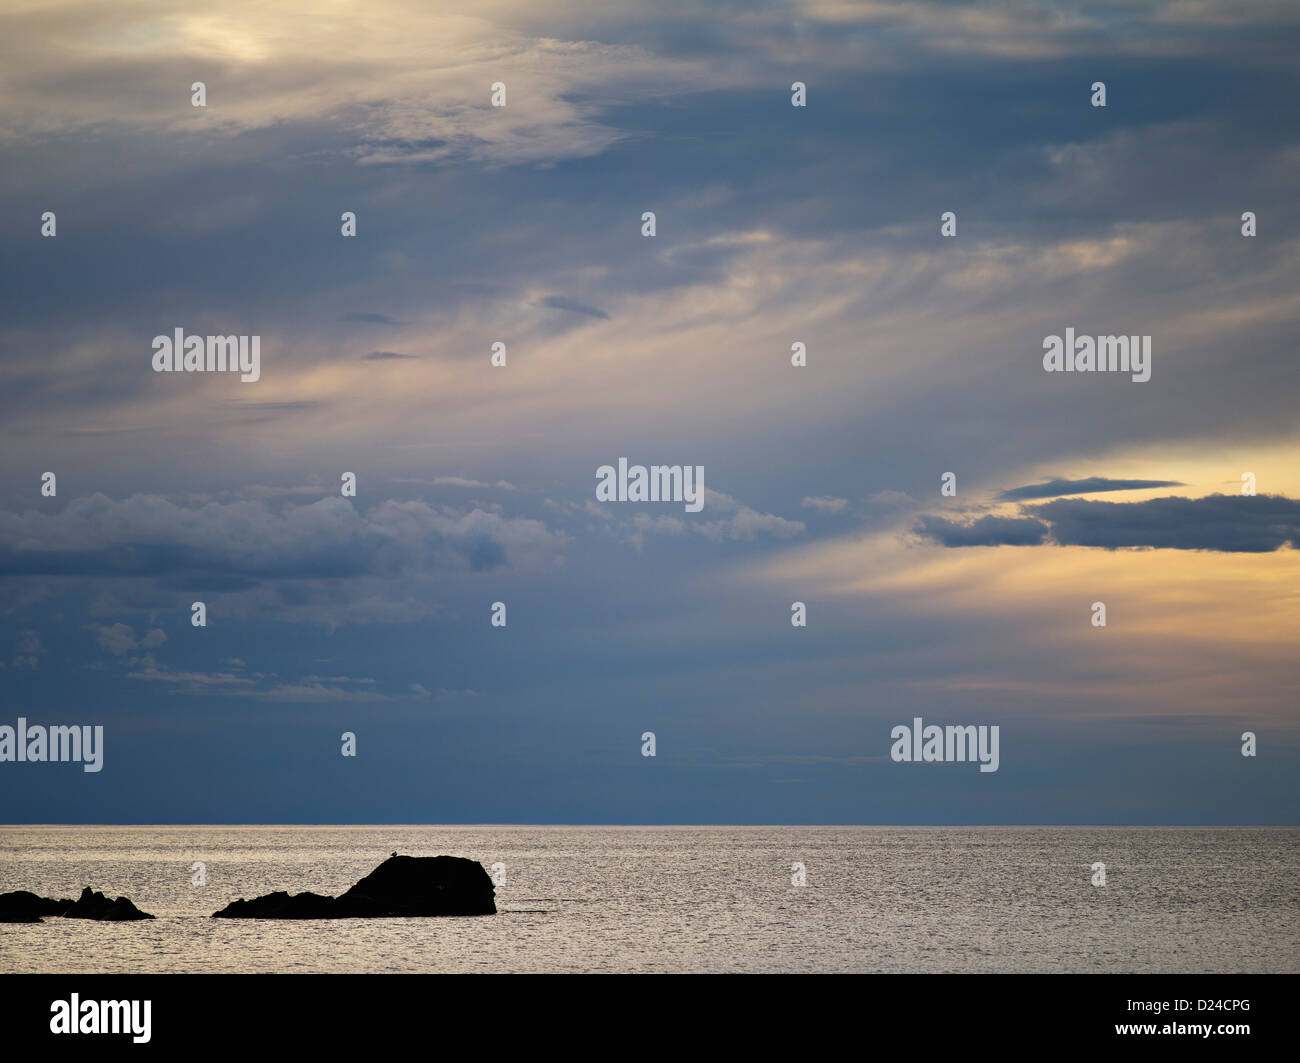 Les roches, la mer et le ciel au coucher du soleil vu de Skagen Flakstad dans les îles Lofoten de Norvège Banque D'Images